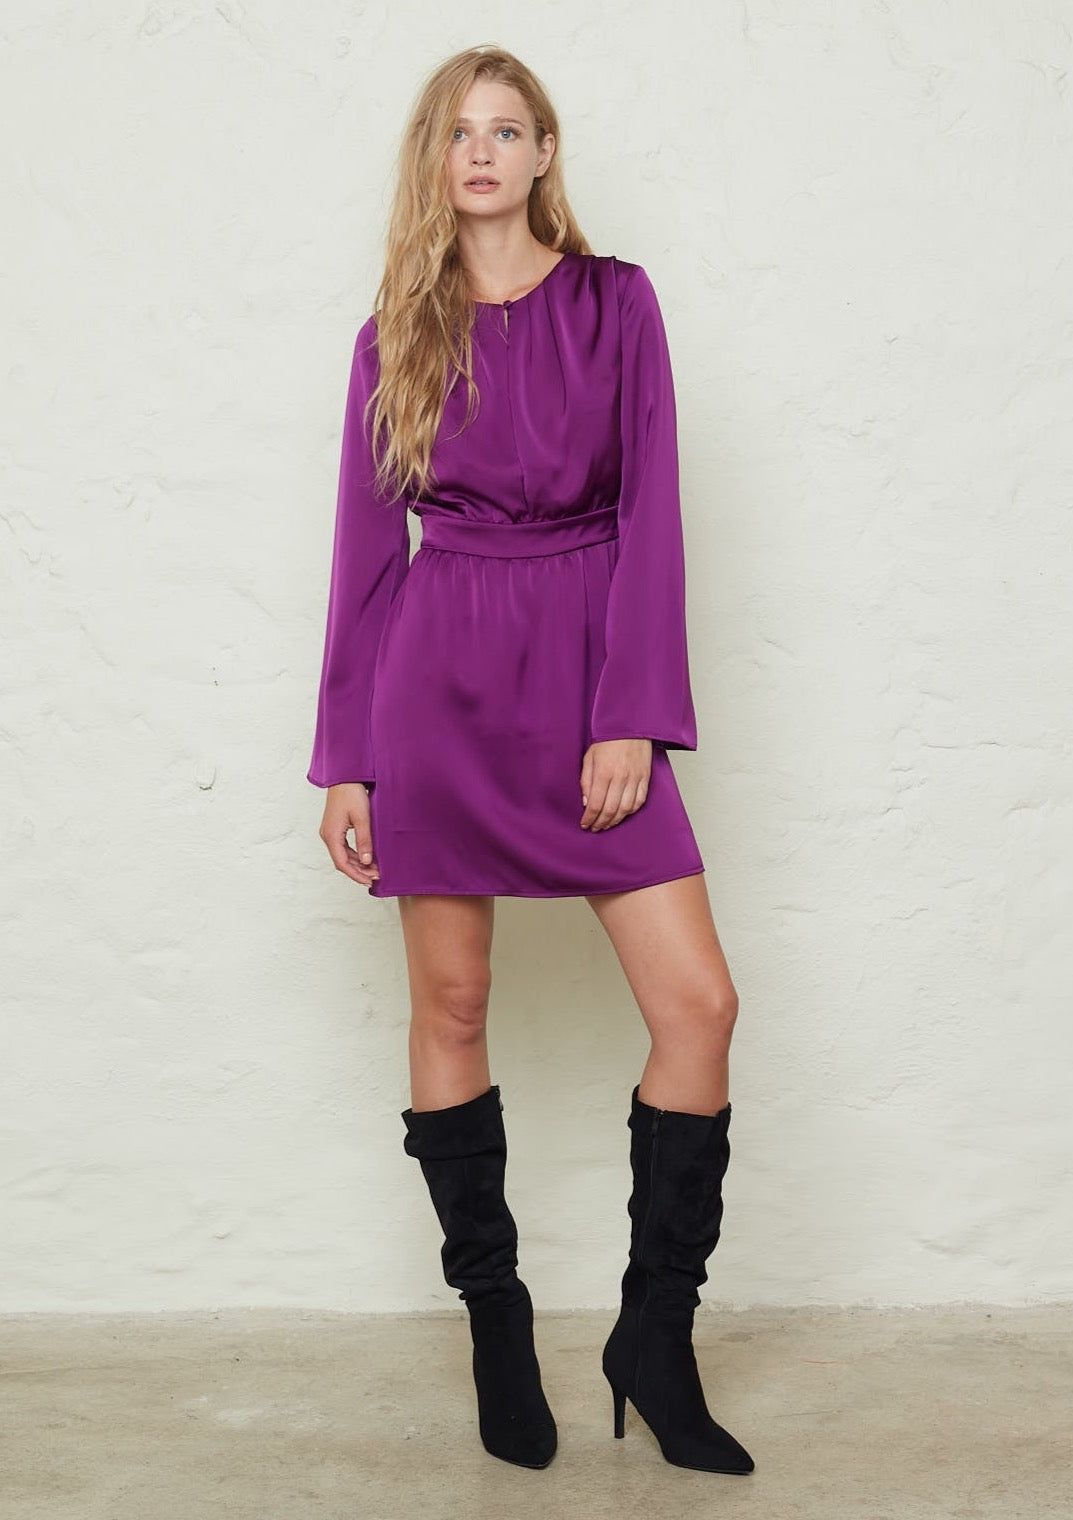 Lavander Intense Violet Dress